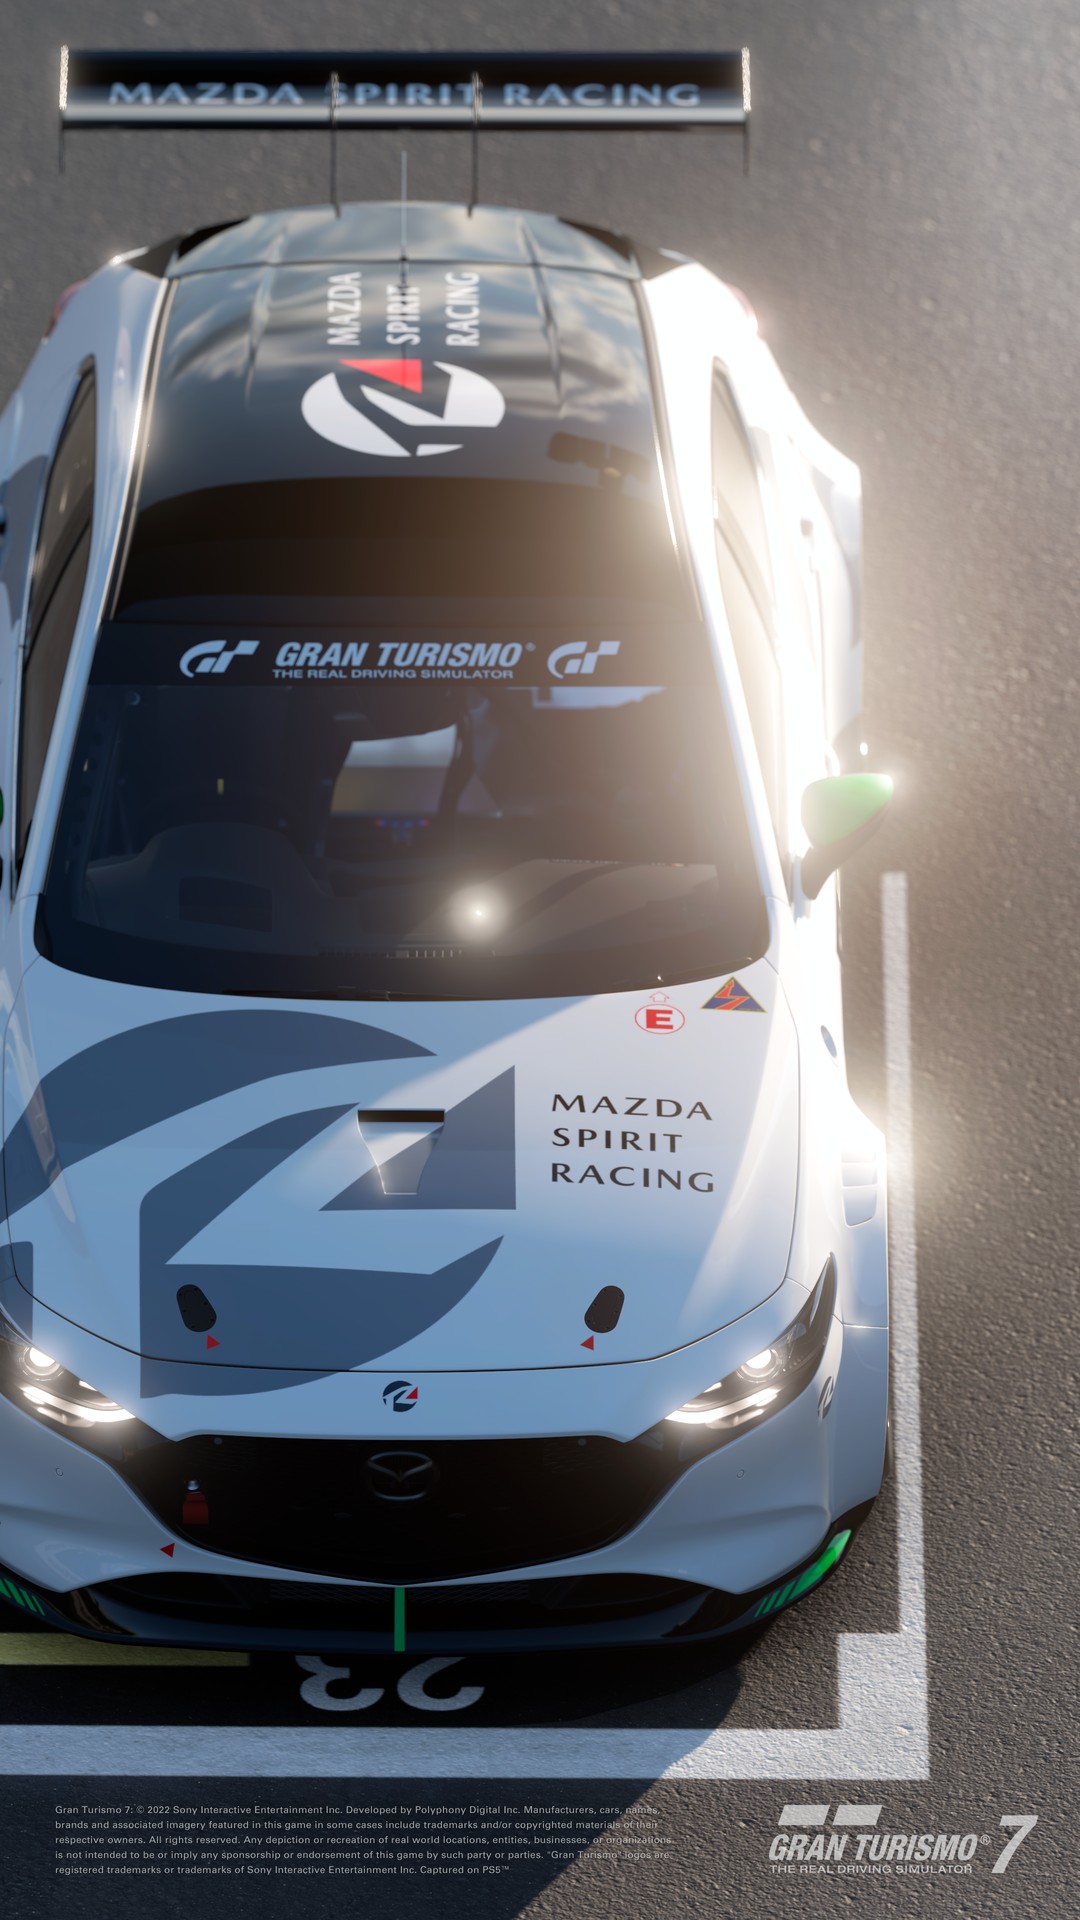 Atualização 1.38 de Gran Turismo chega sexta-feira com três novos carros -  Meia-Lua